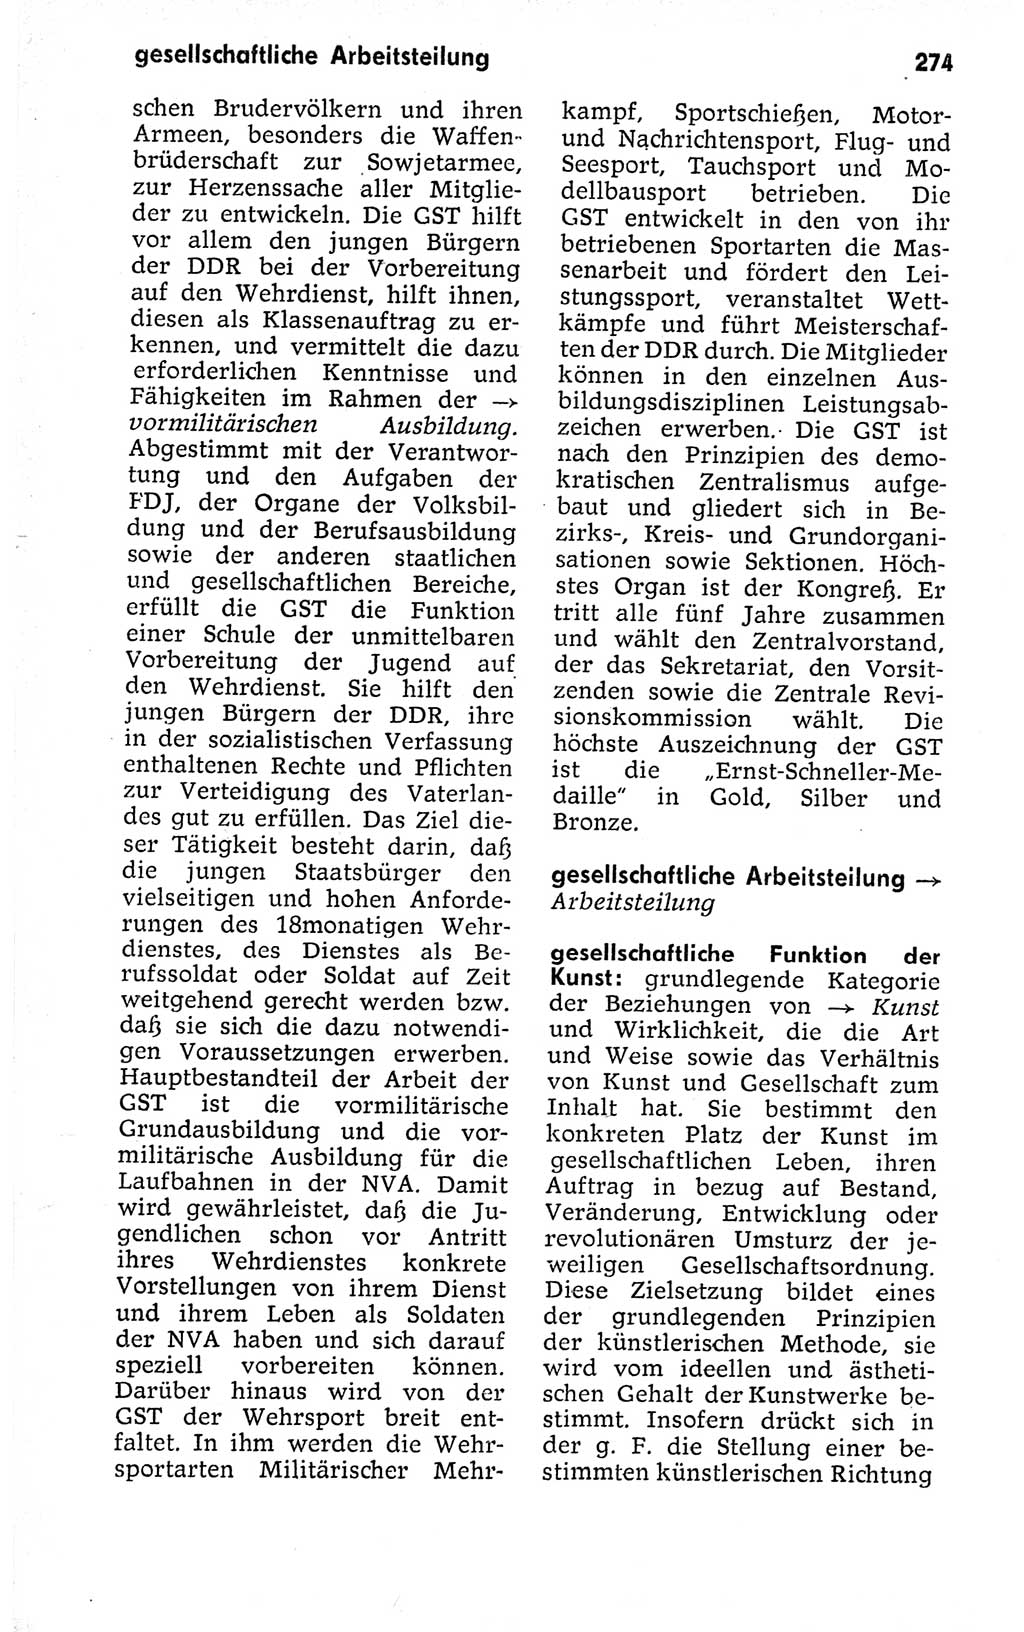 Kleines politisches Wörterbuch [Deutsche Demokratische Republik (DDR)] 1973, Seite 274 (Kl. pol. Wb. DDR 1973, S. 274)